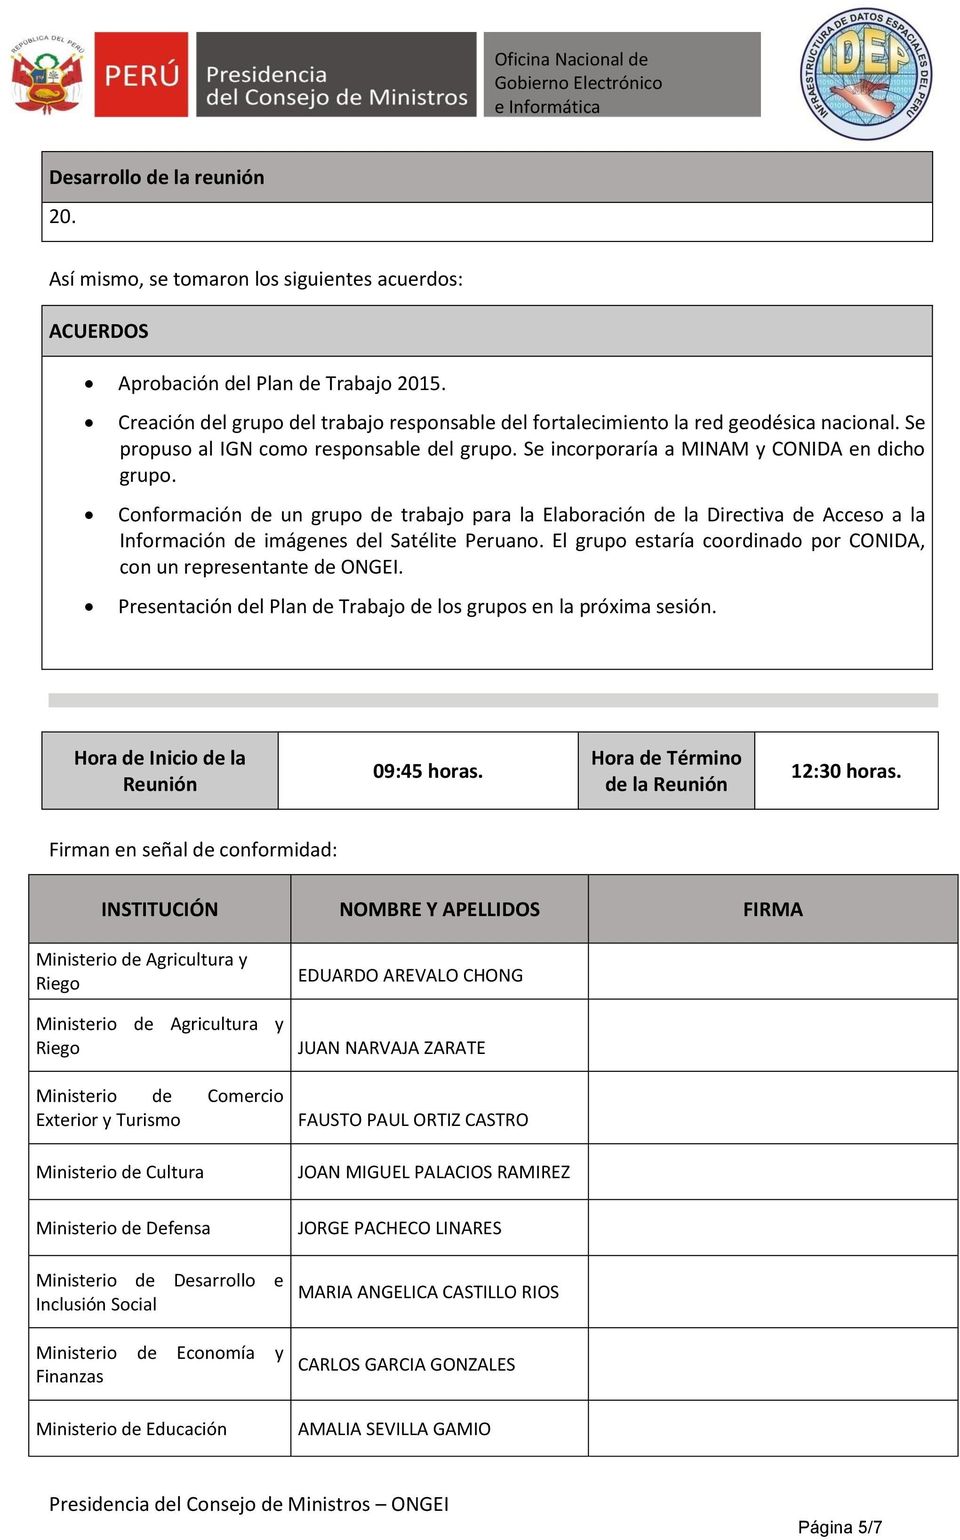 Conformación de un grupo de trabajo para la Elaboración de la Directiva de Acceso a la Información de imágenes del Satélite Peruano.